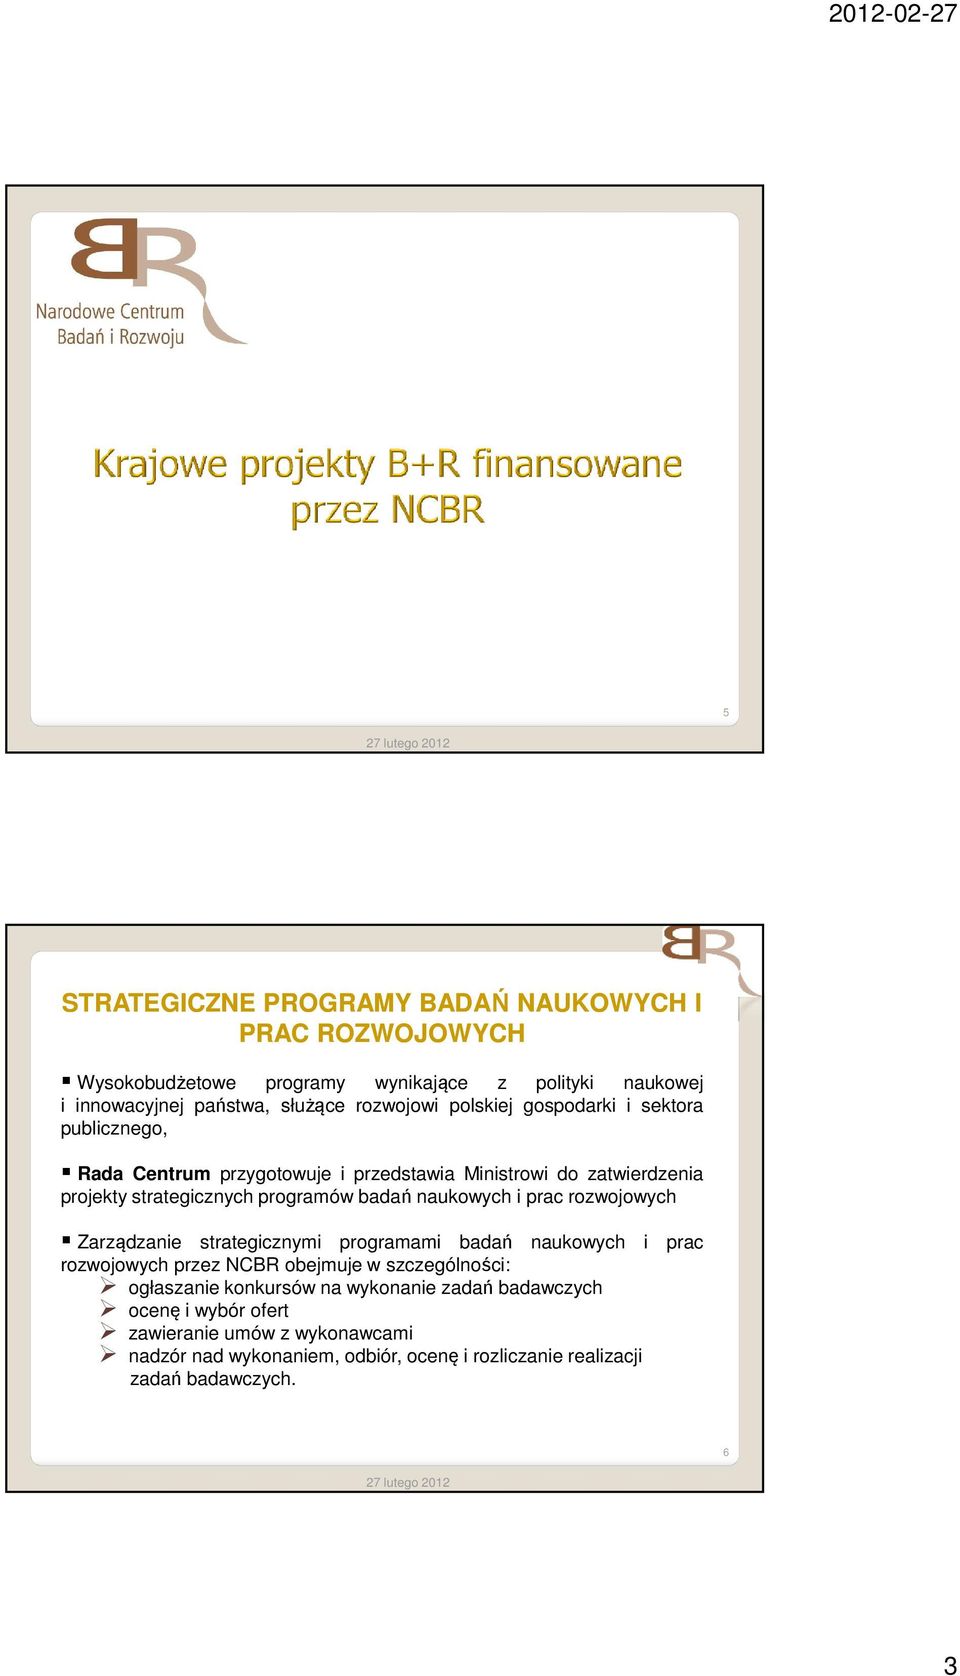 naukowych i prac rozwojowych Zarządzanie strategicznymi programami badań naukowych i prac rozwojowych przez NCBR obejmuje w szczególności: ogłaszanie